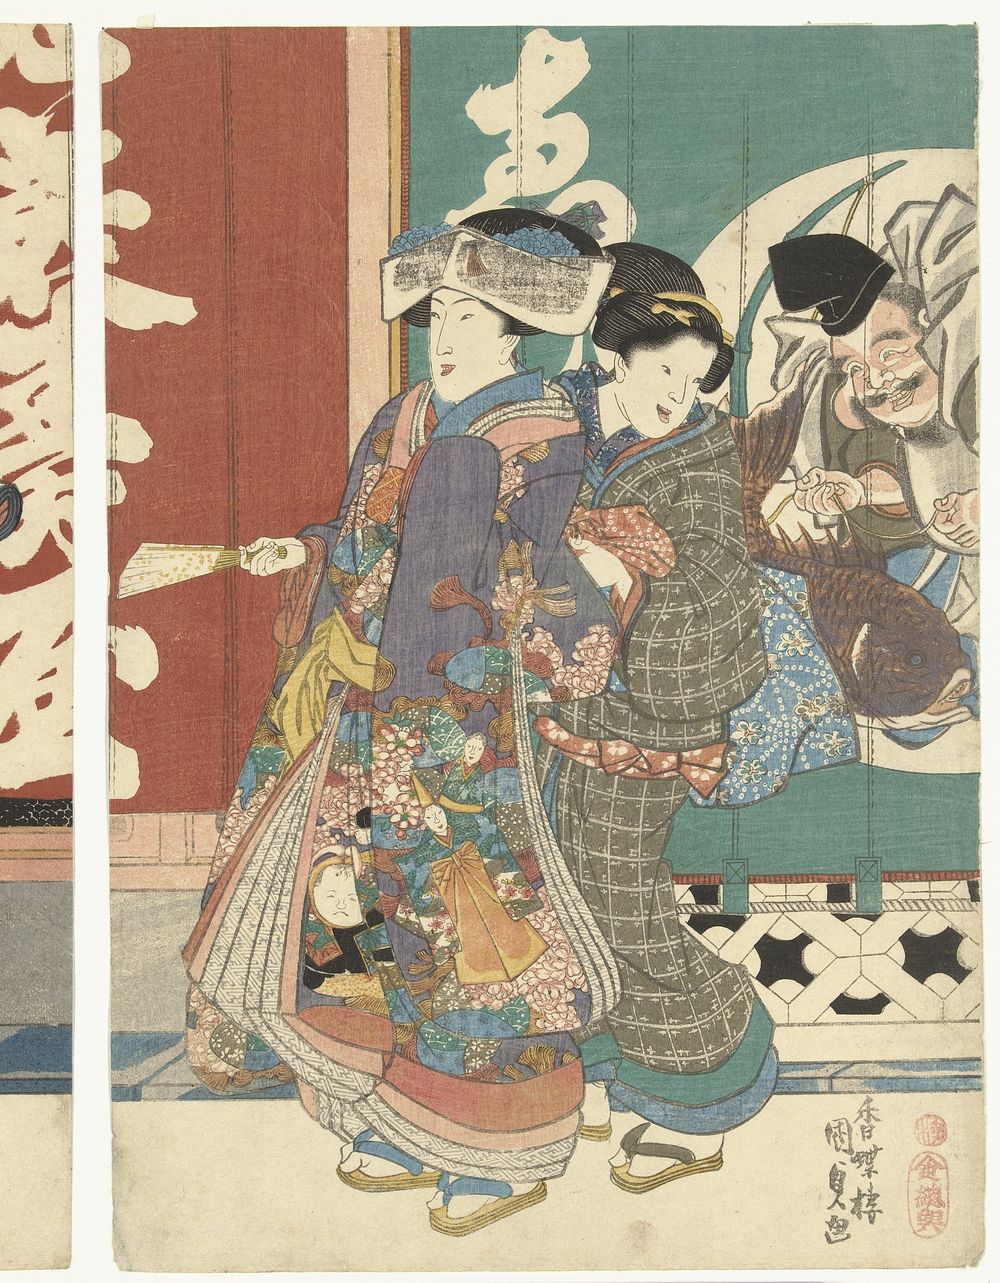 Vrouwen bij de Ebisuya winkel (c. 1842) by Utagawa Kunisada I and Soshuya Yohei